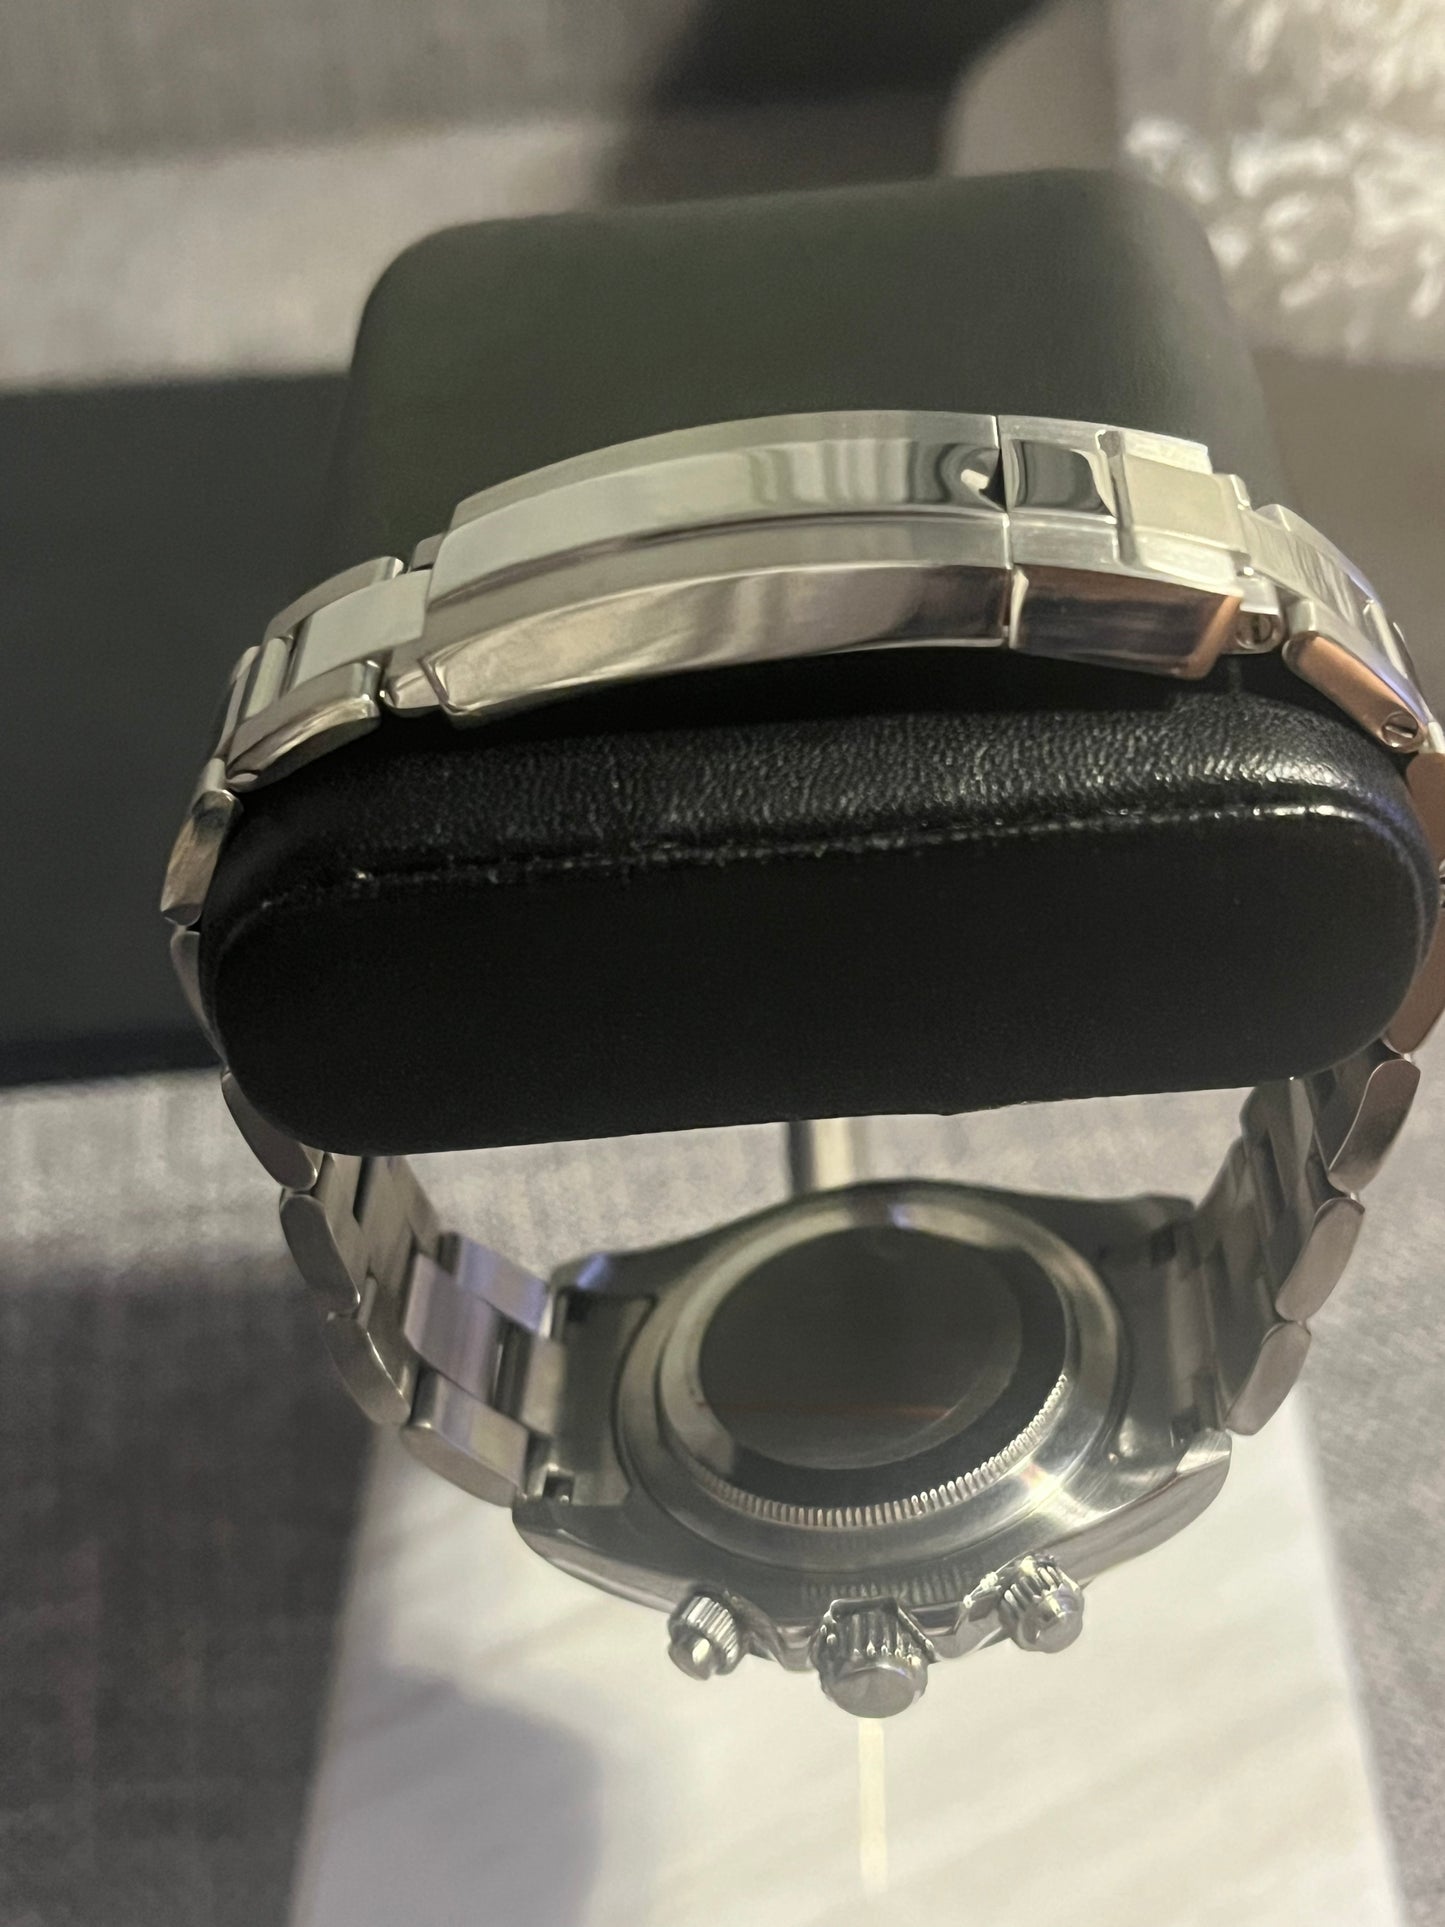 Custom build seiko seitona VK63 meca-quartz chronograph watch - panda mod Daytona